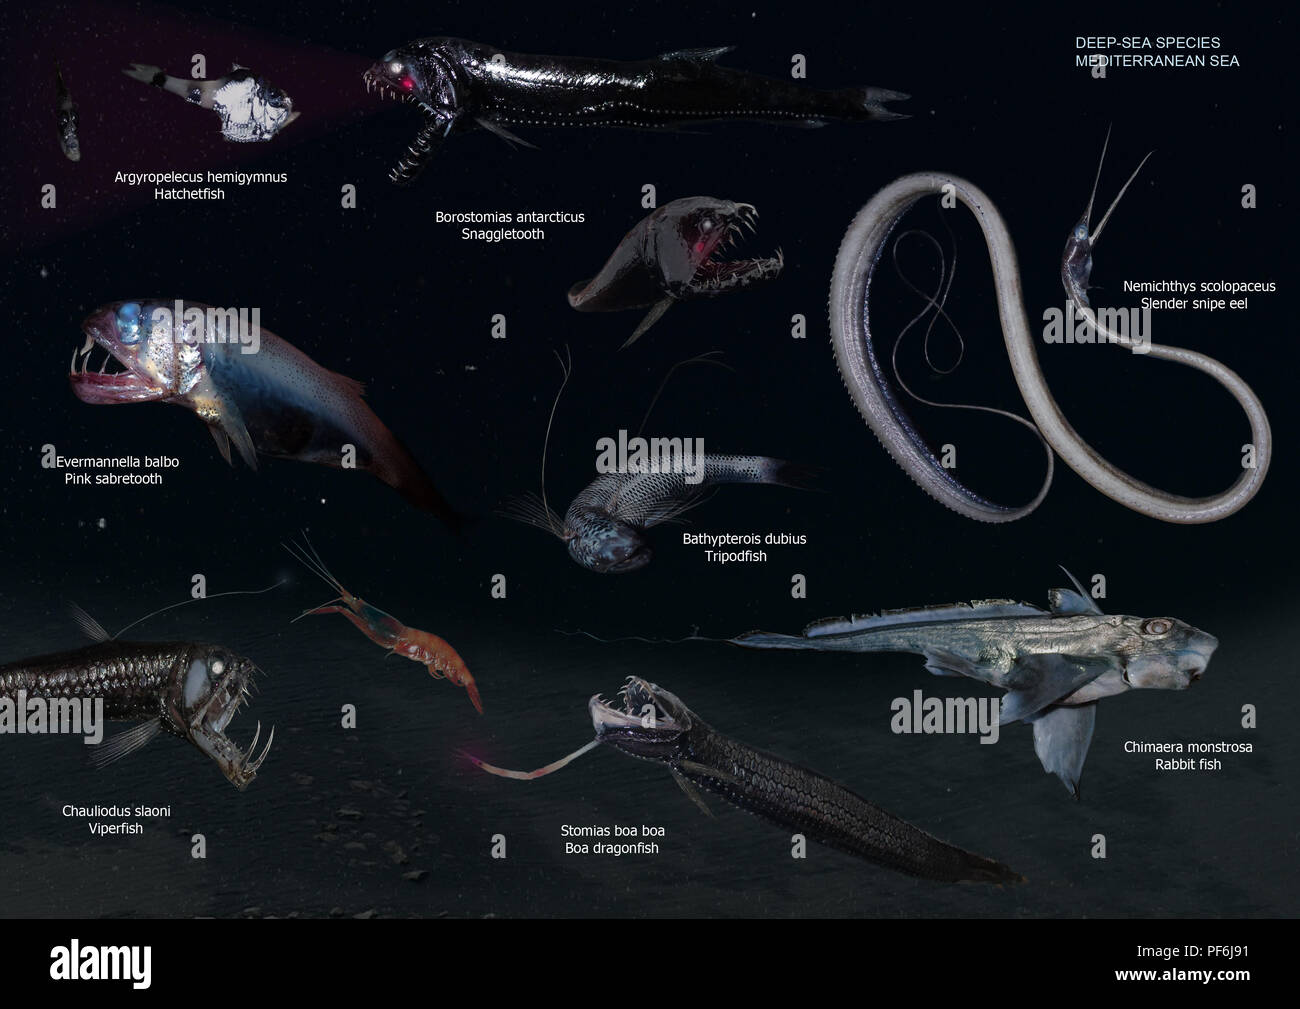 Composición de imágenes de extraños peces abisales. Deepsea verdaderos monstruos del mar Mediterráneo. Especies que viven en las profundidades donde no llega la luz solar Foto de stock